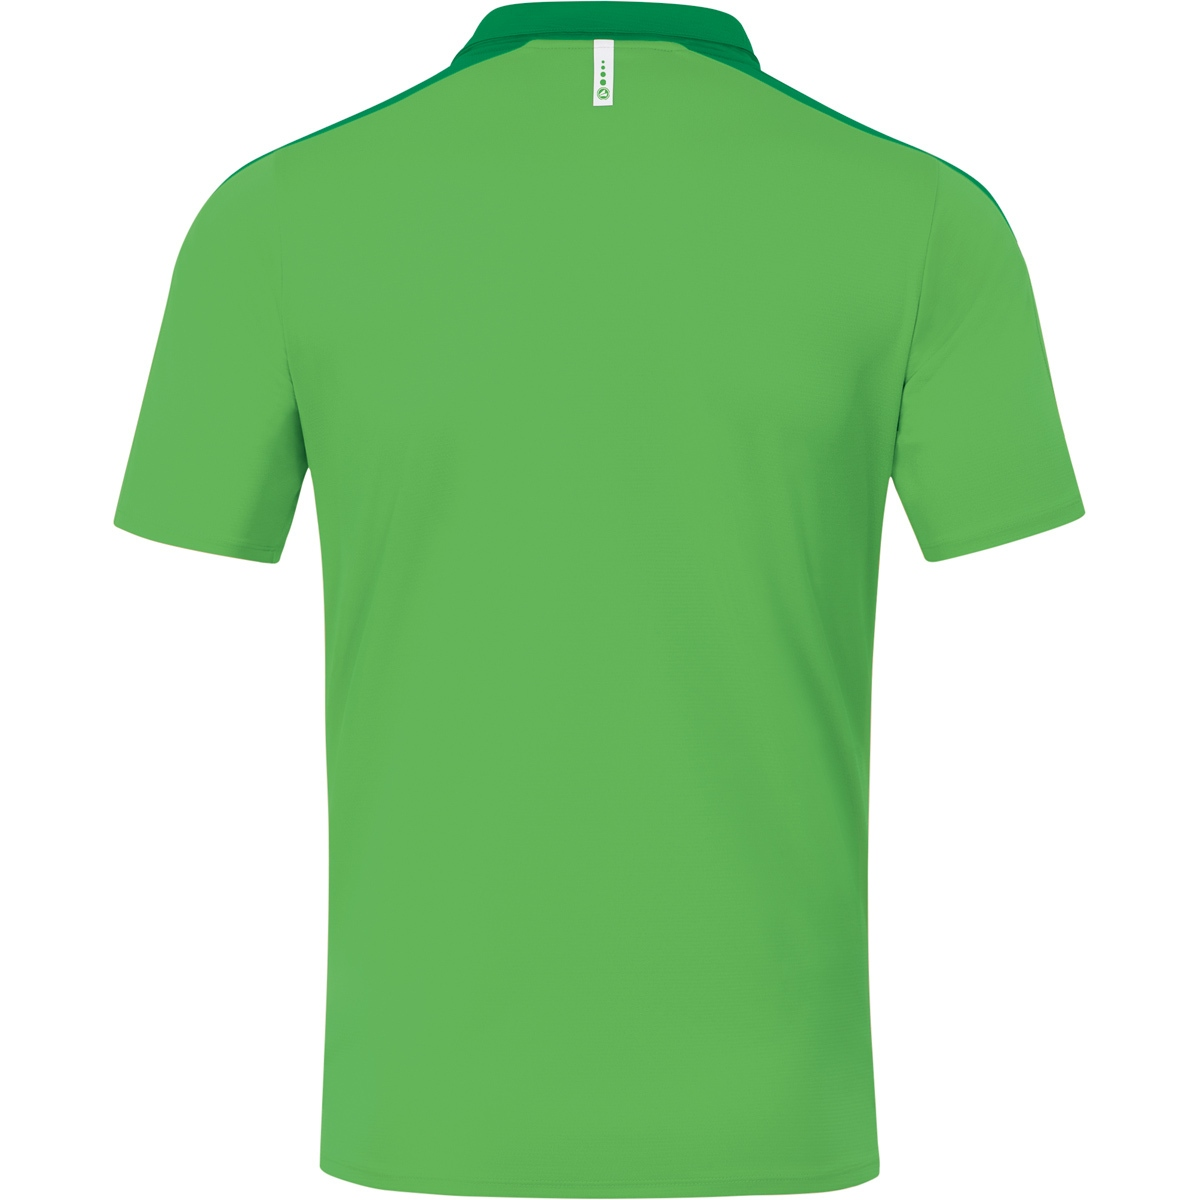 42, JAKO Champ Damen, green/sportgrün, soft 6320 Polo Gr. 2.0